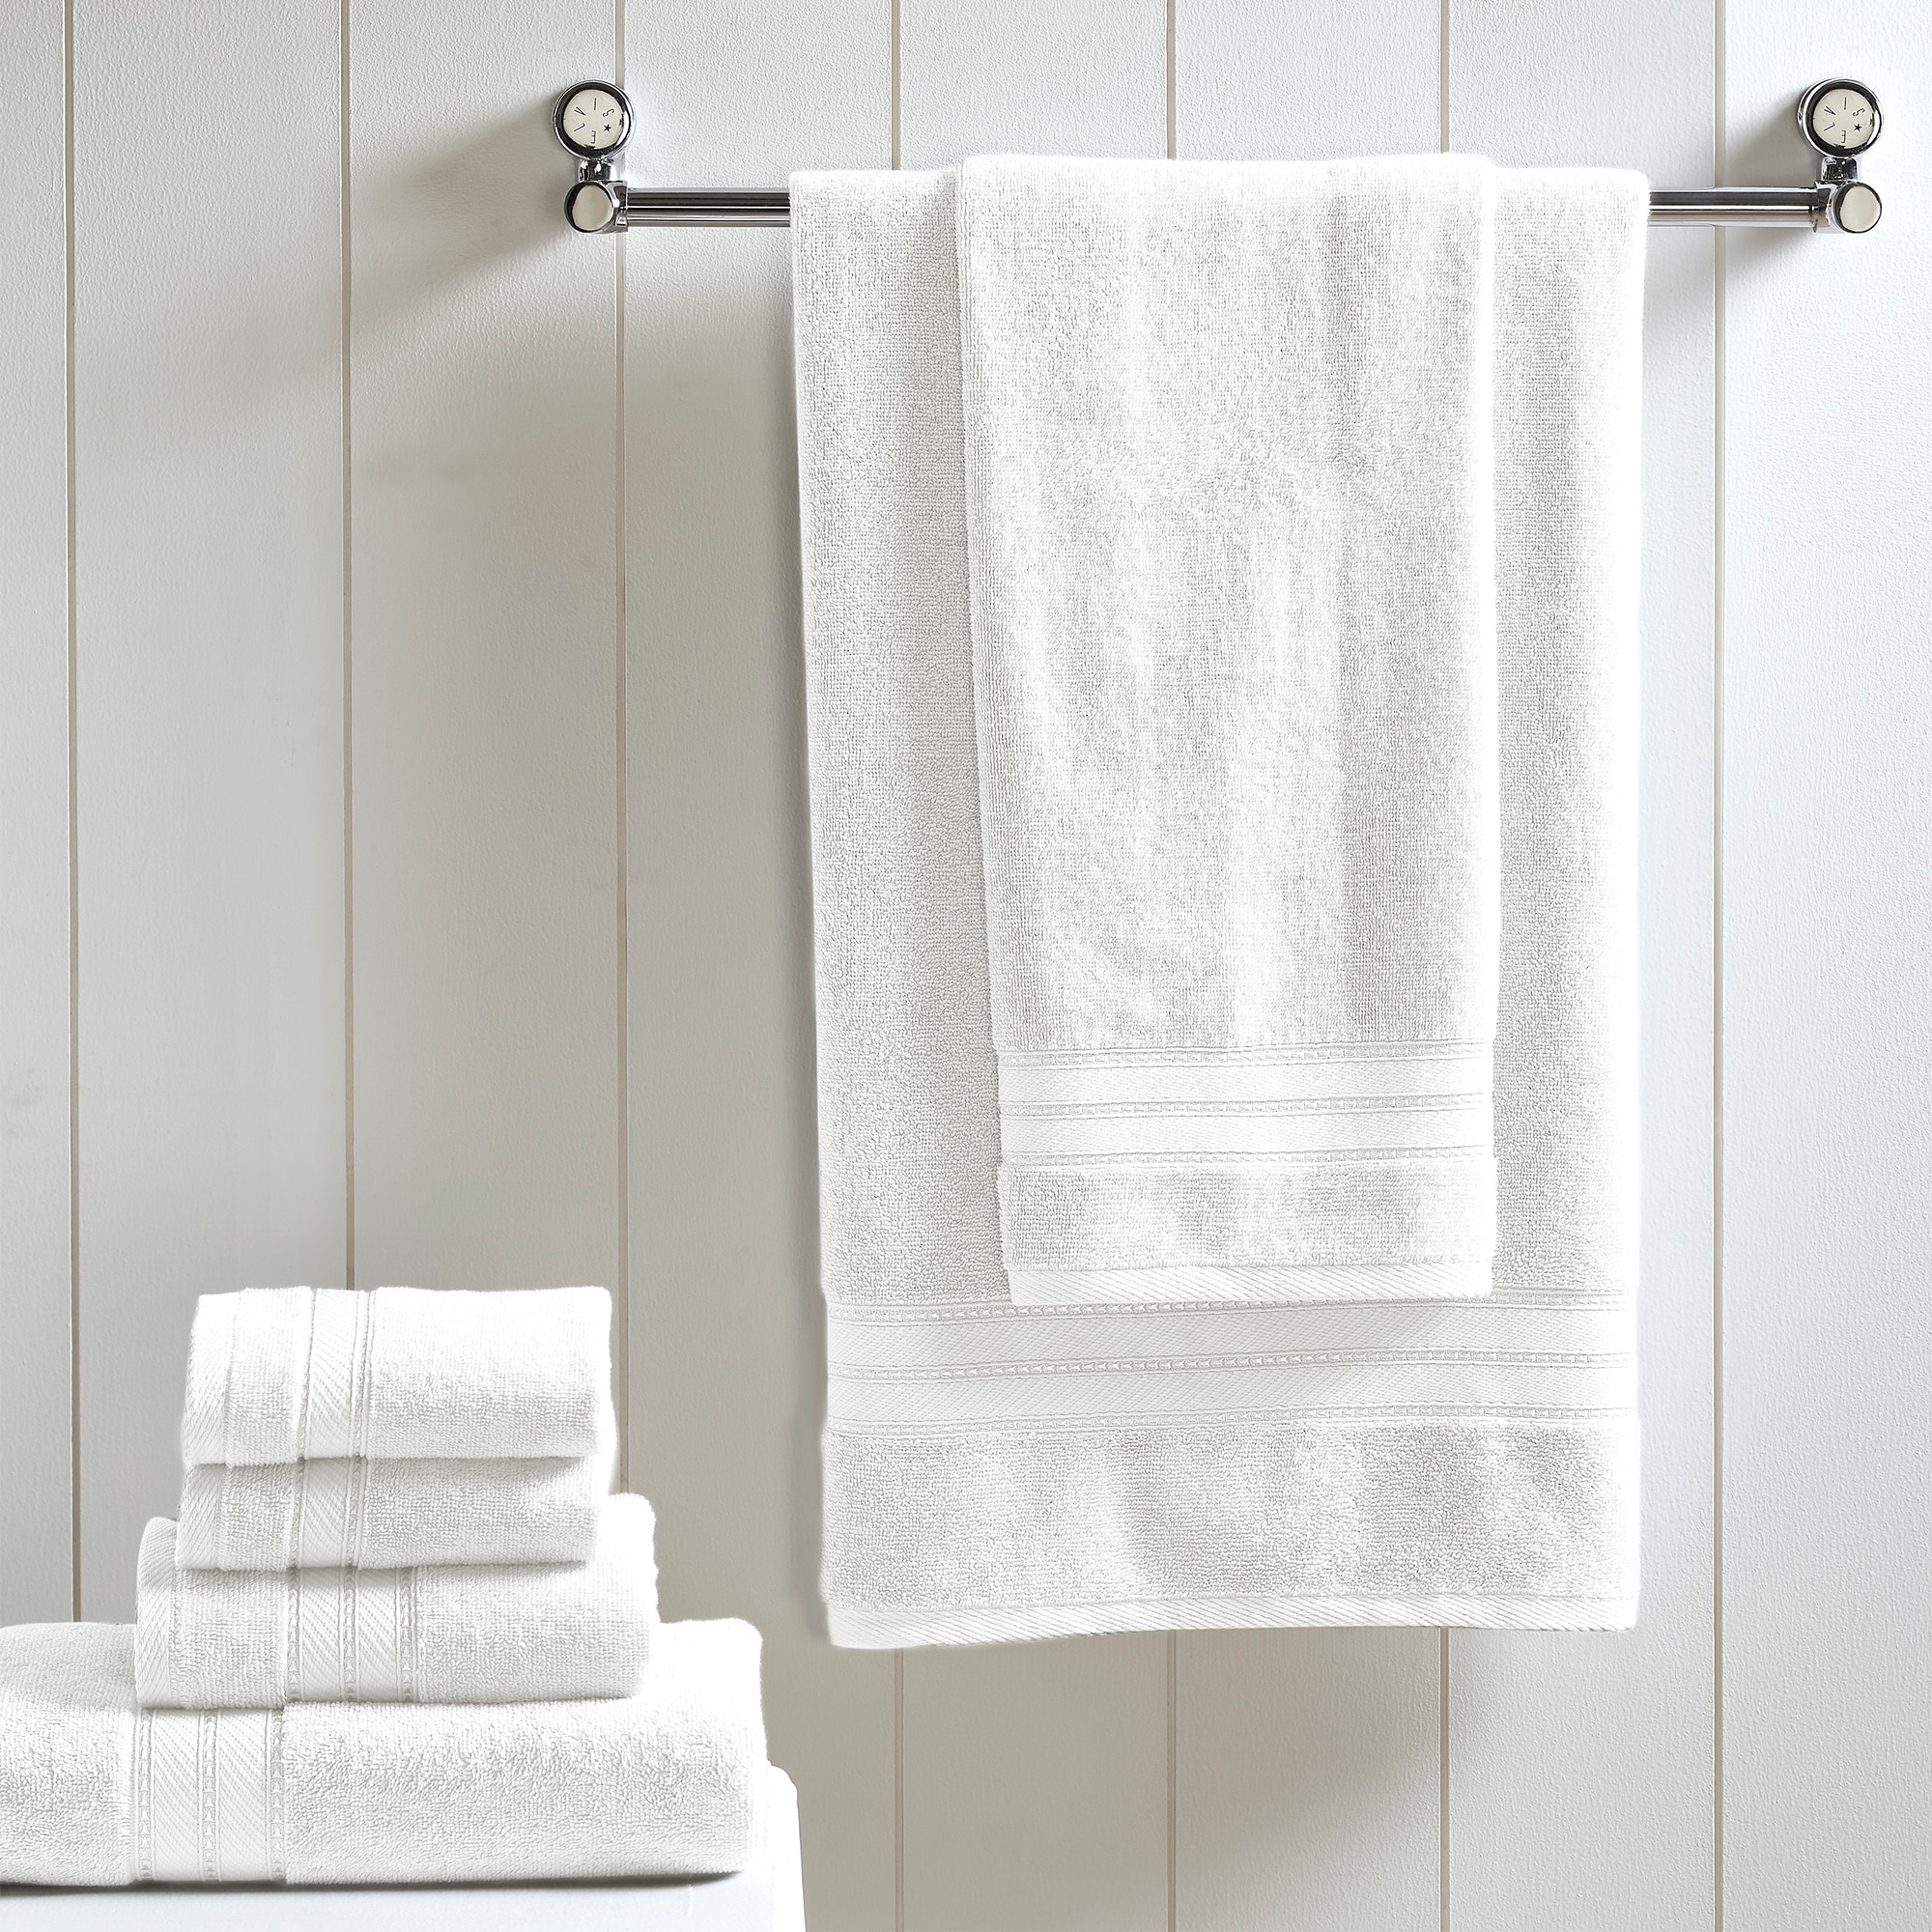 Vintage Made Modern Towel + Thread Kit - 10 spools 12 Wt. Cotton Petites,  6 Towels, 6